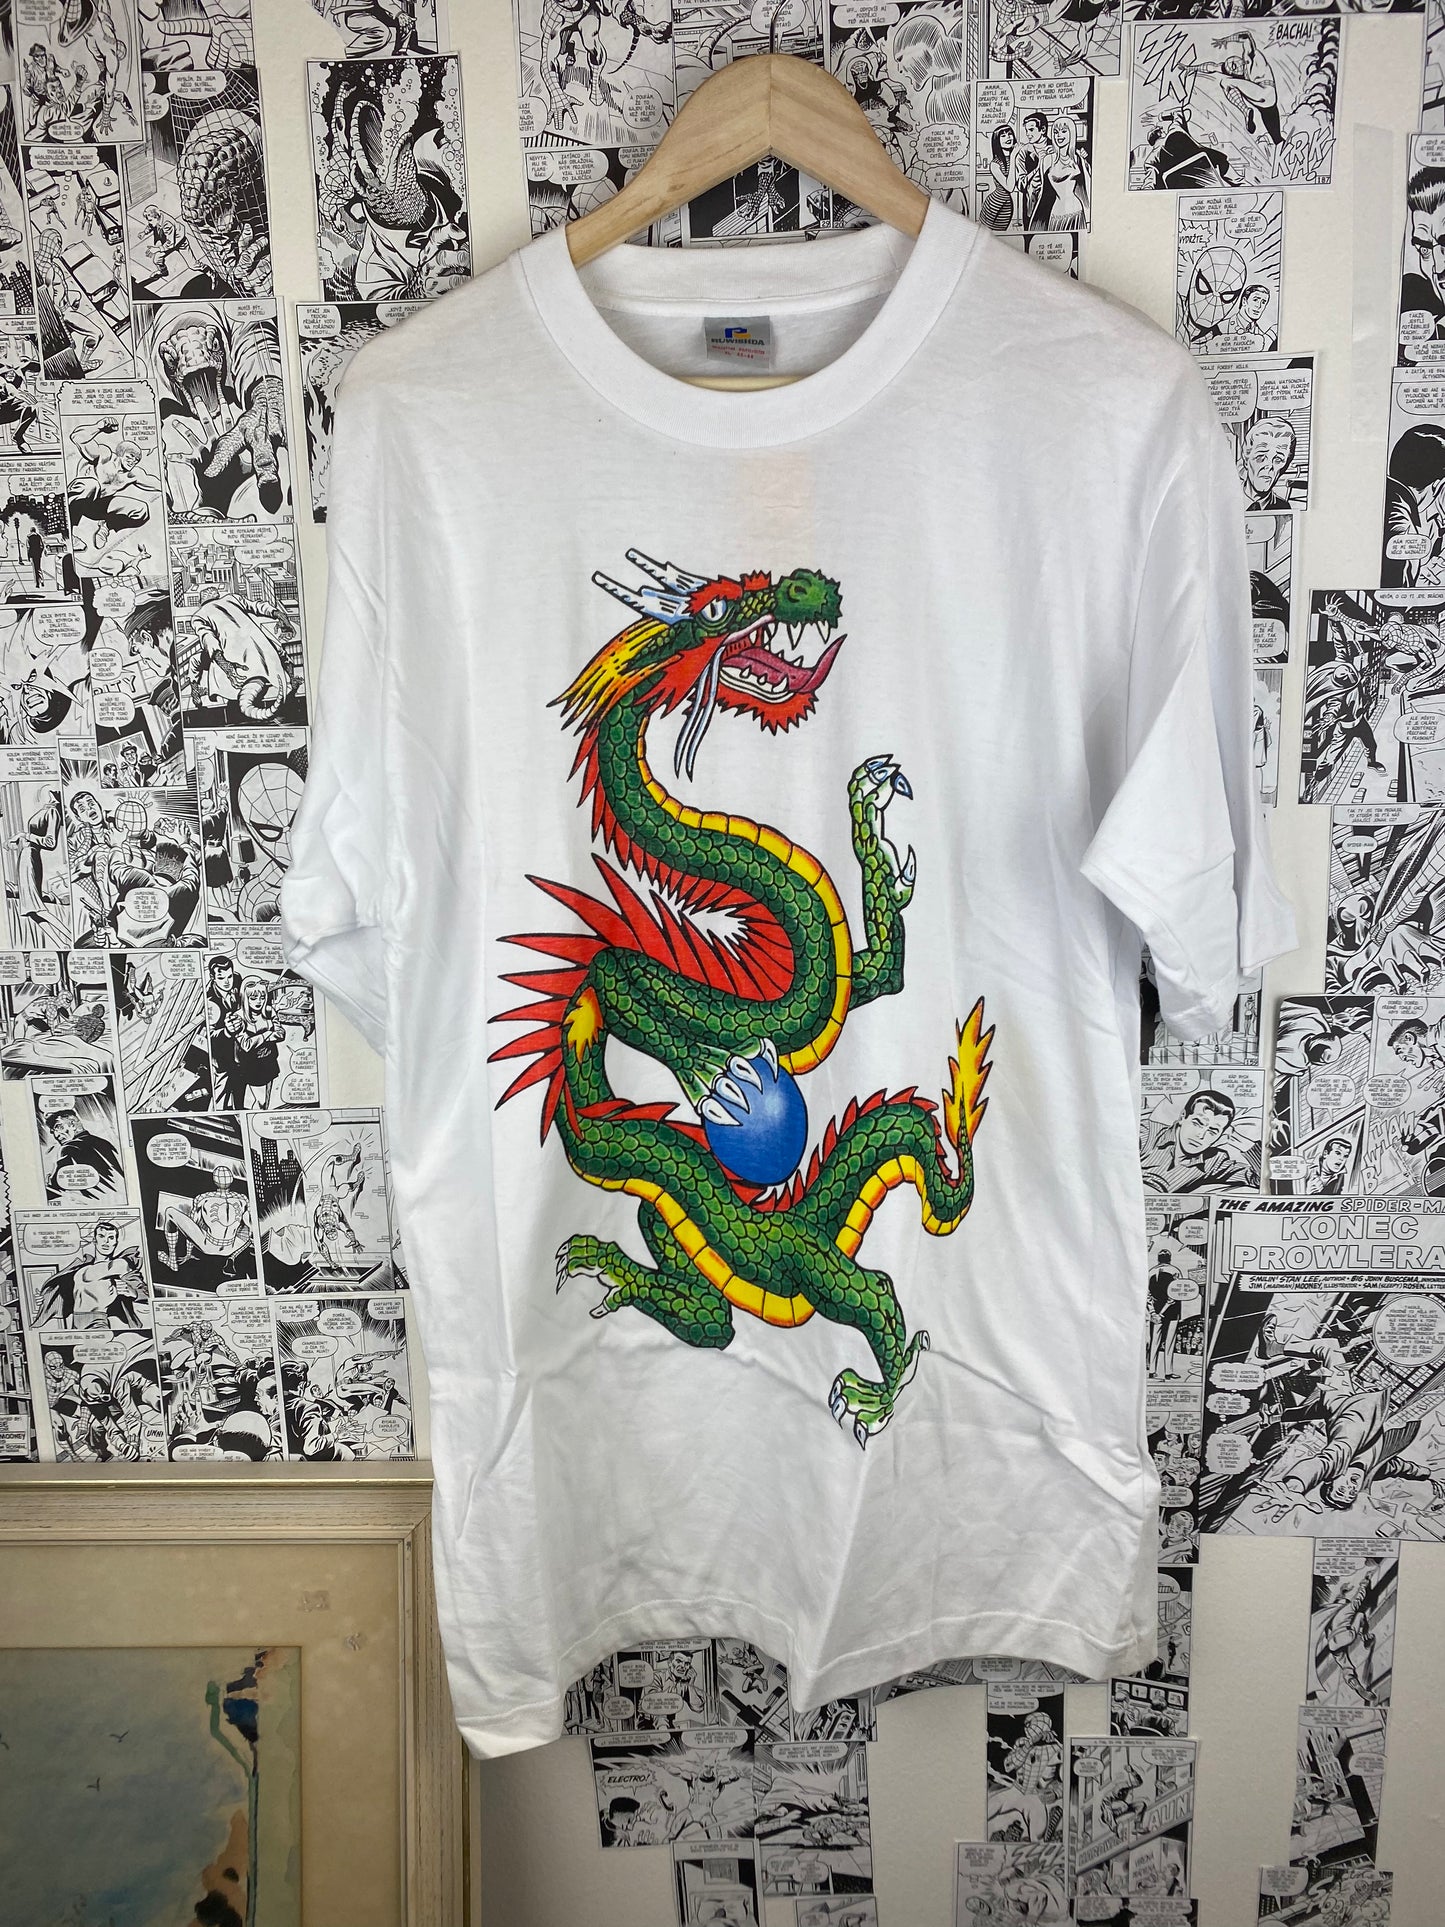 Vintage Dragon 90s t-shirt - size XL